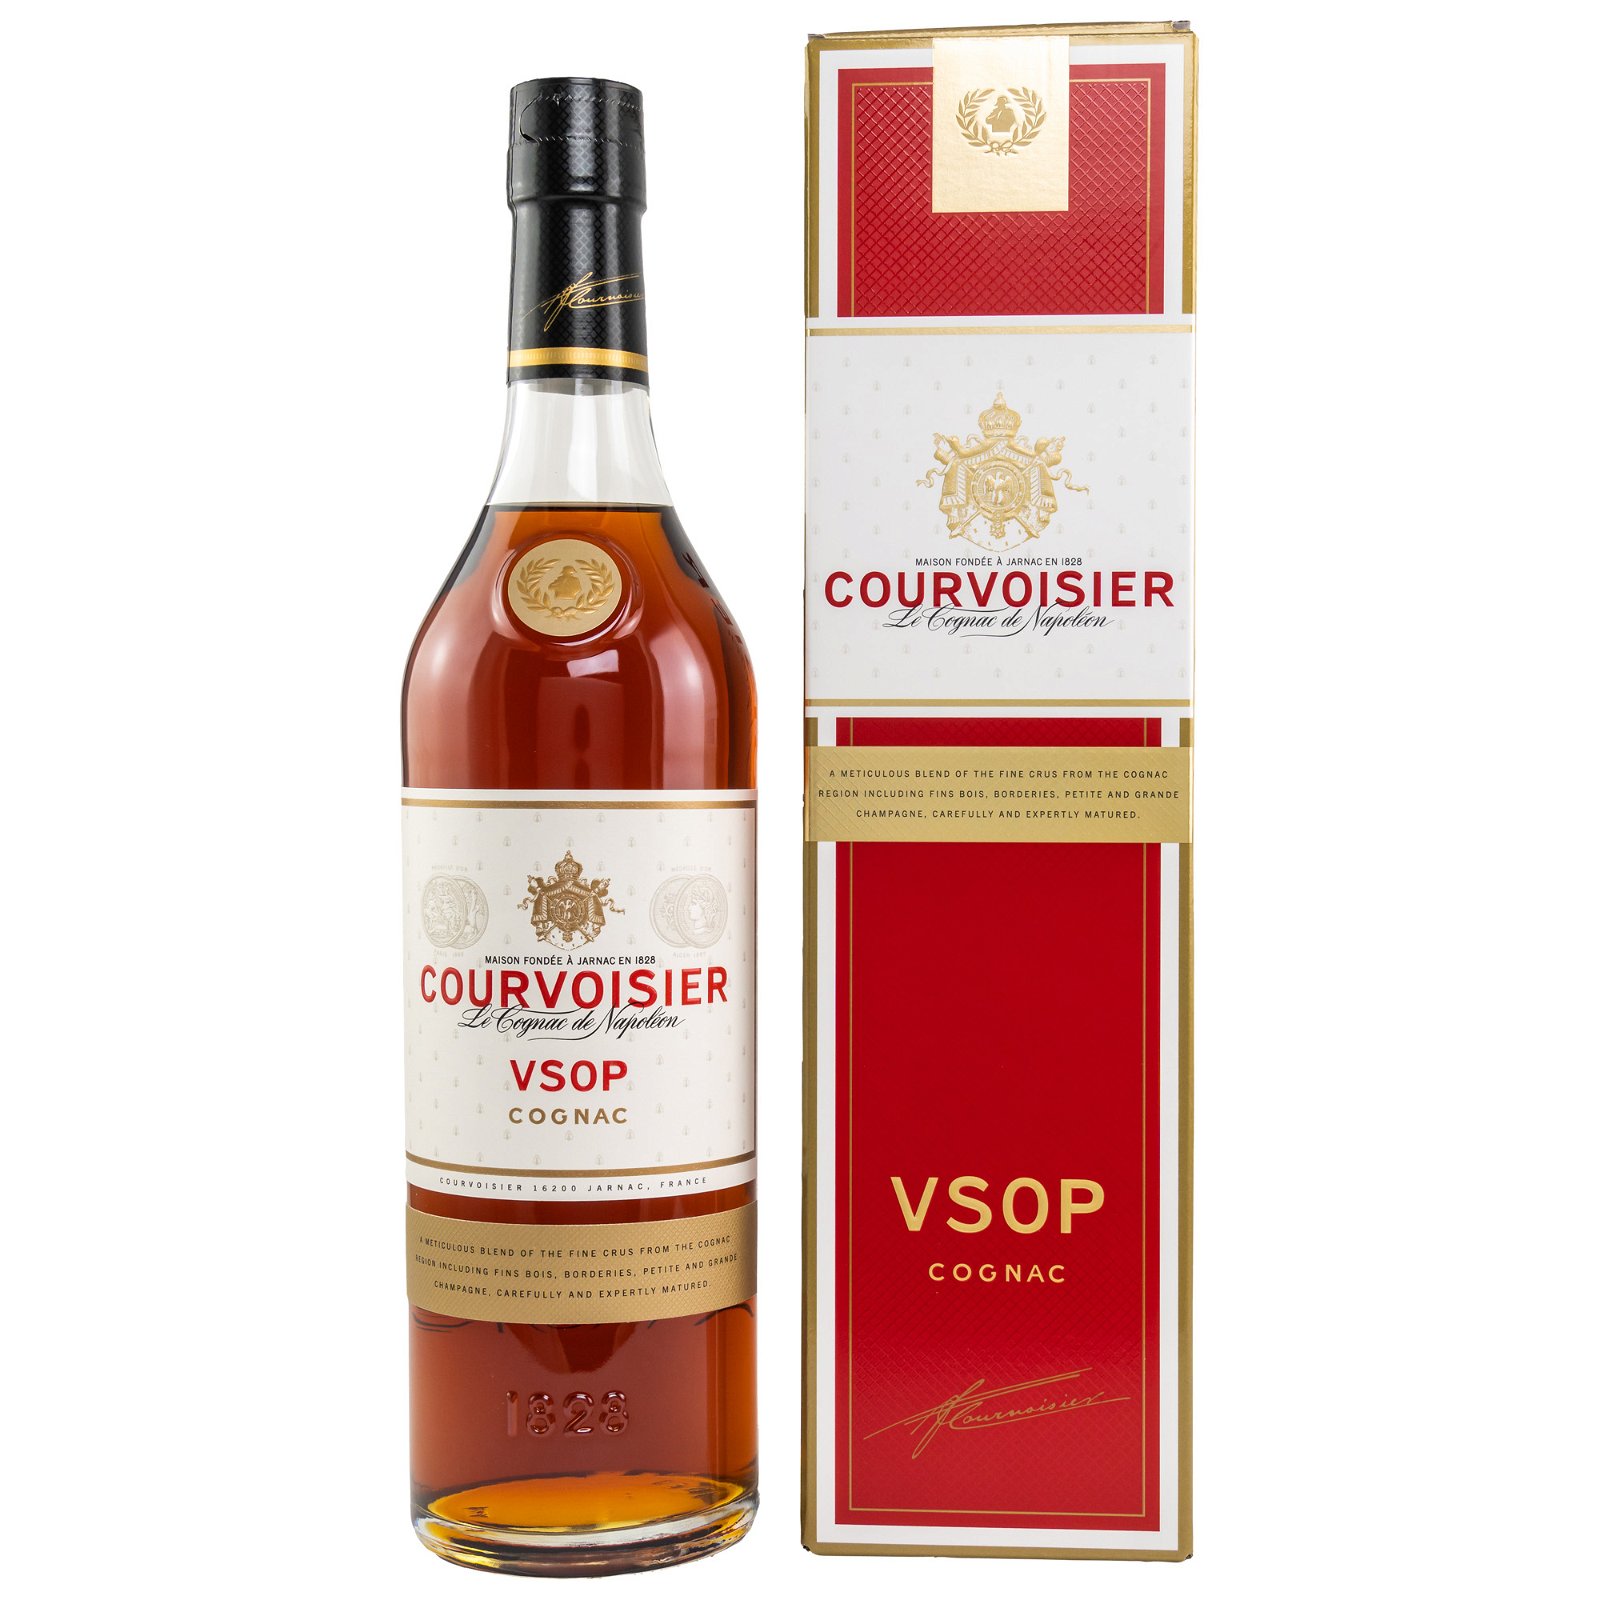 Courvoisier VSOP Le Cognac de Napoléon